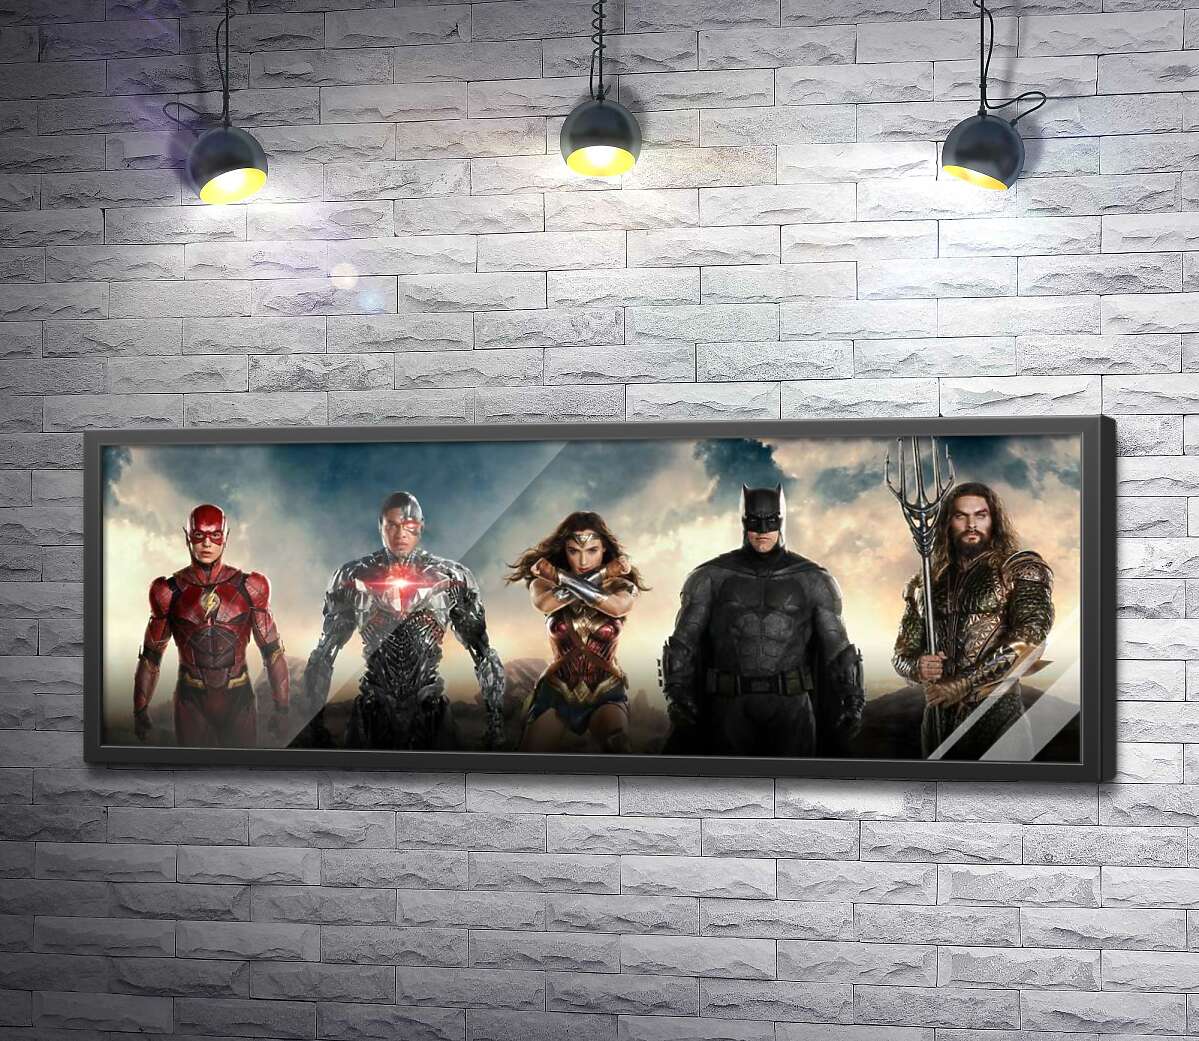 постер Супергерои из фильма "Лига Справедливости" (Justice League)